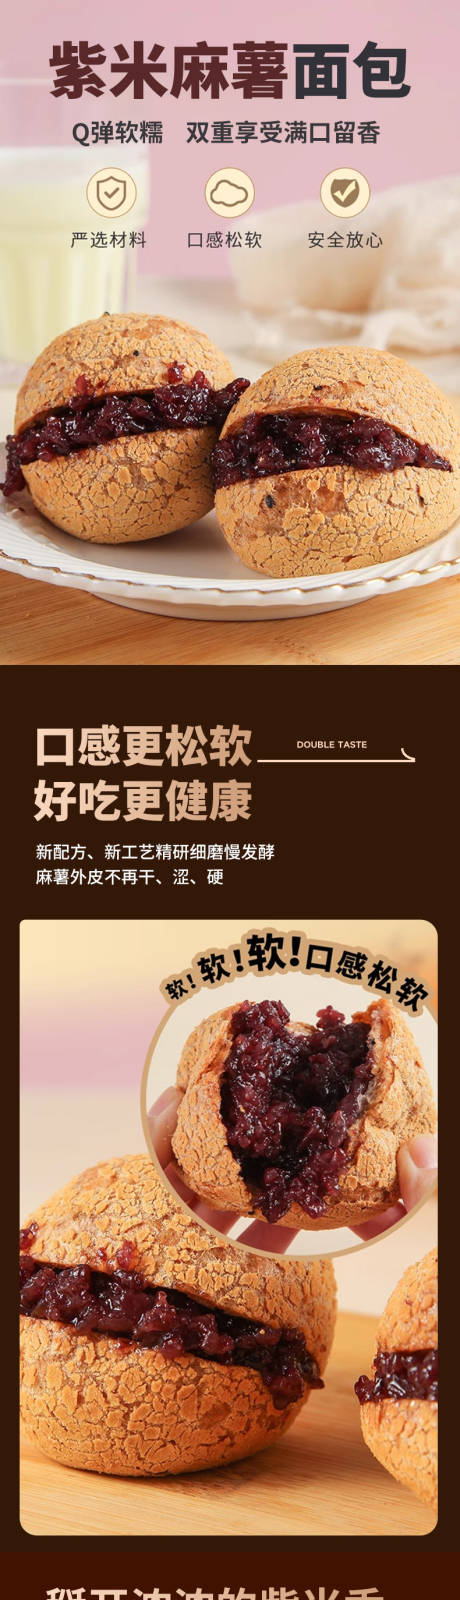 麻薯紫米面包详情页